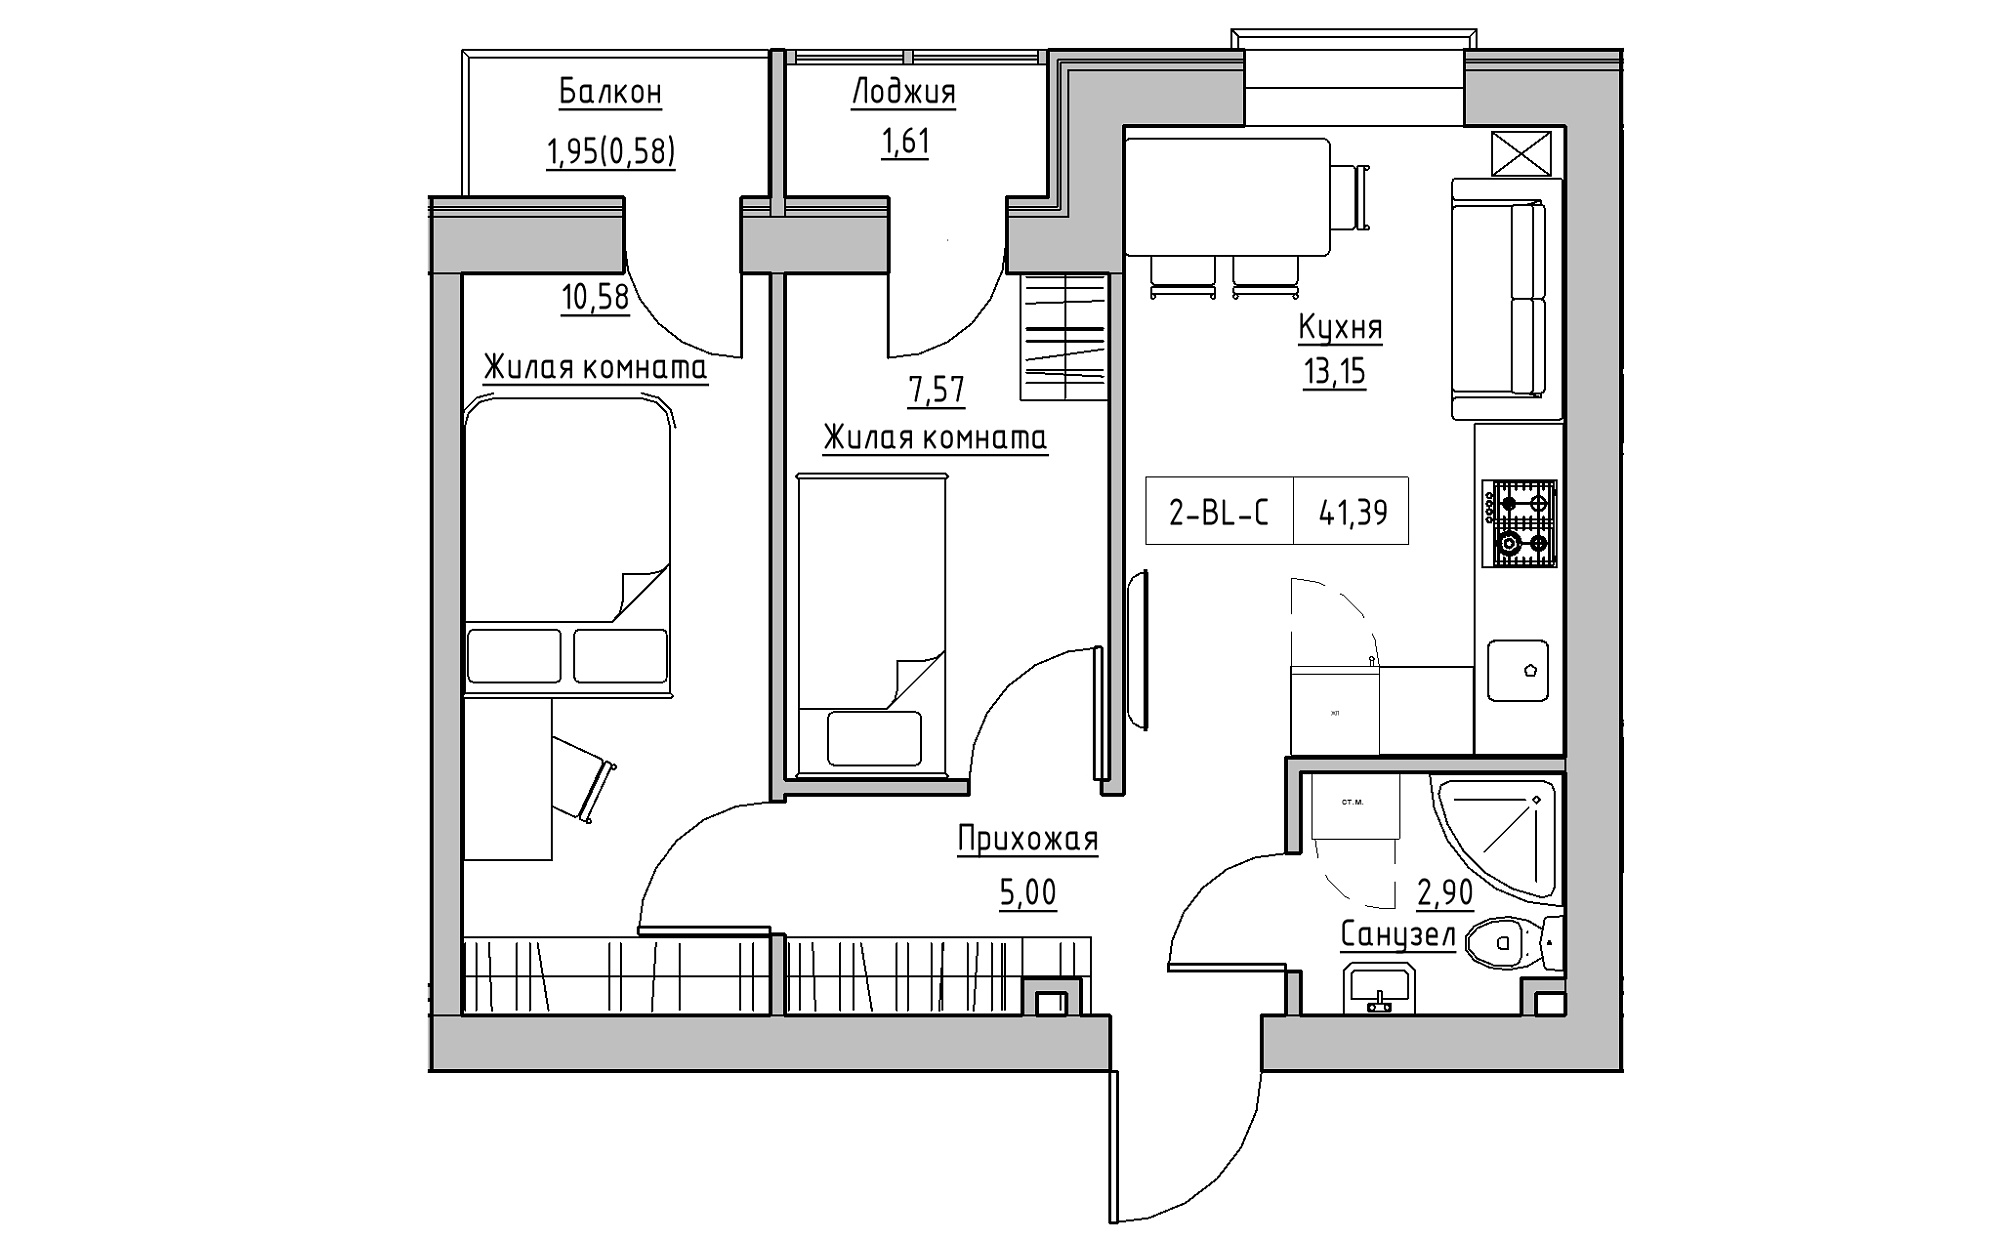 Планировка 2-к квартира площей 41.39м2, KS-022-02/0005.